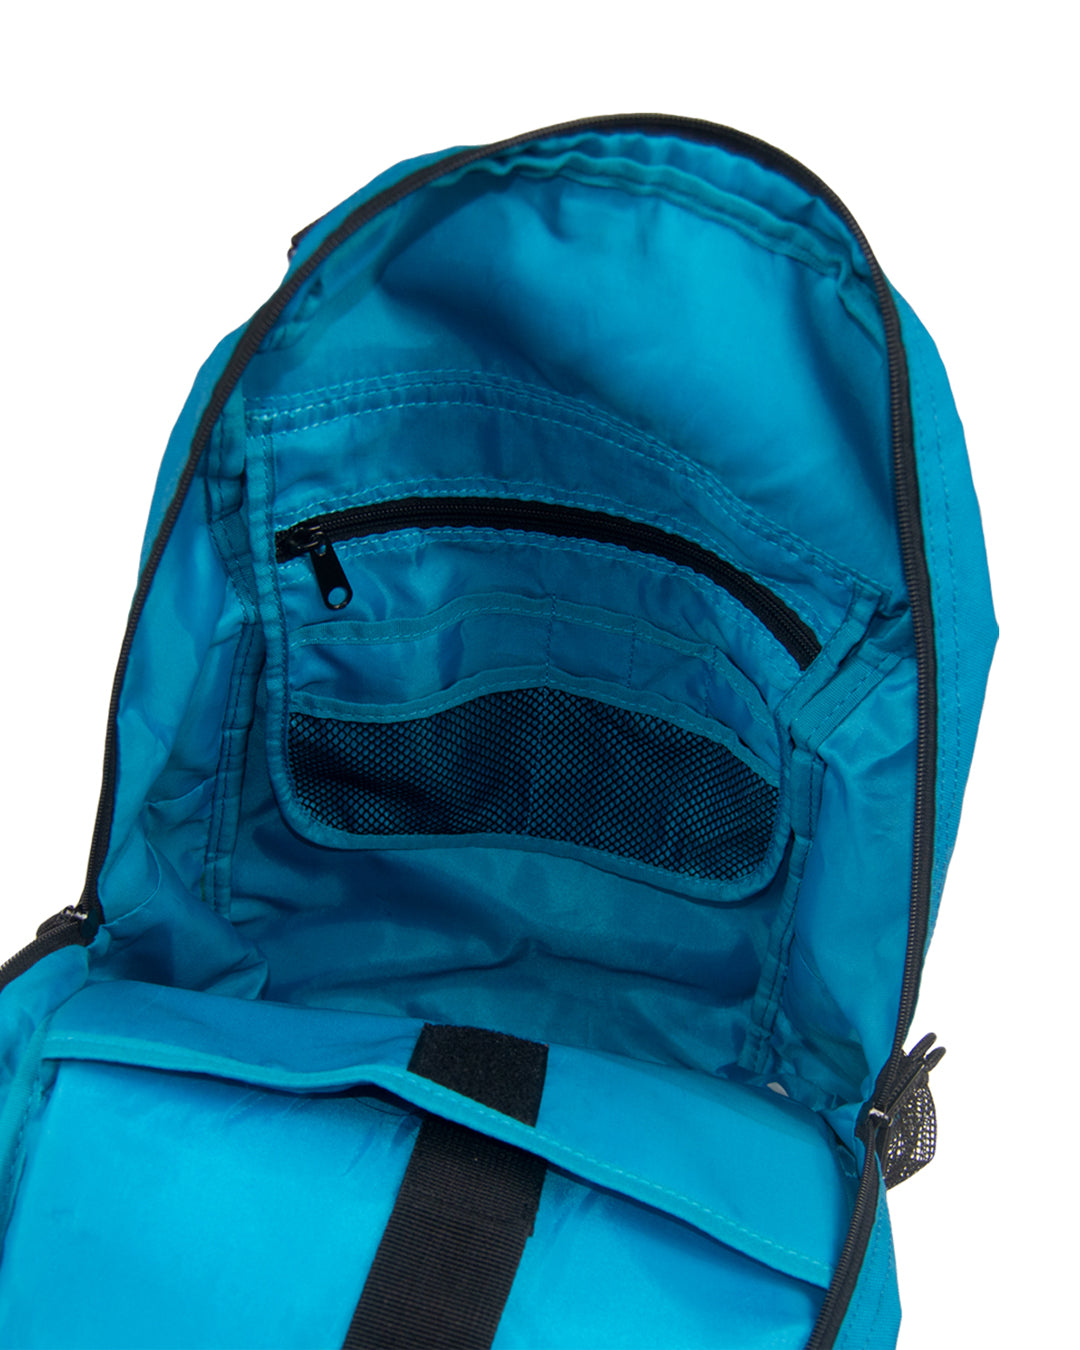 Né-Net Nya Functional Backpack